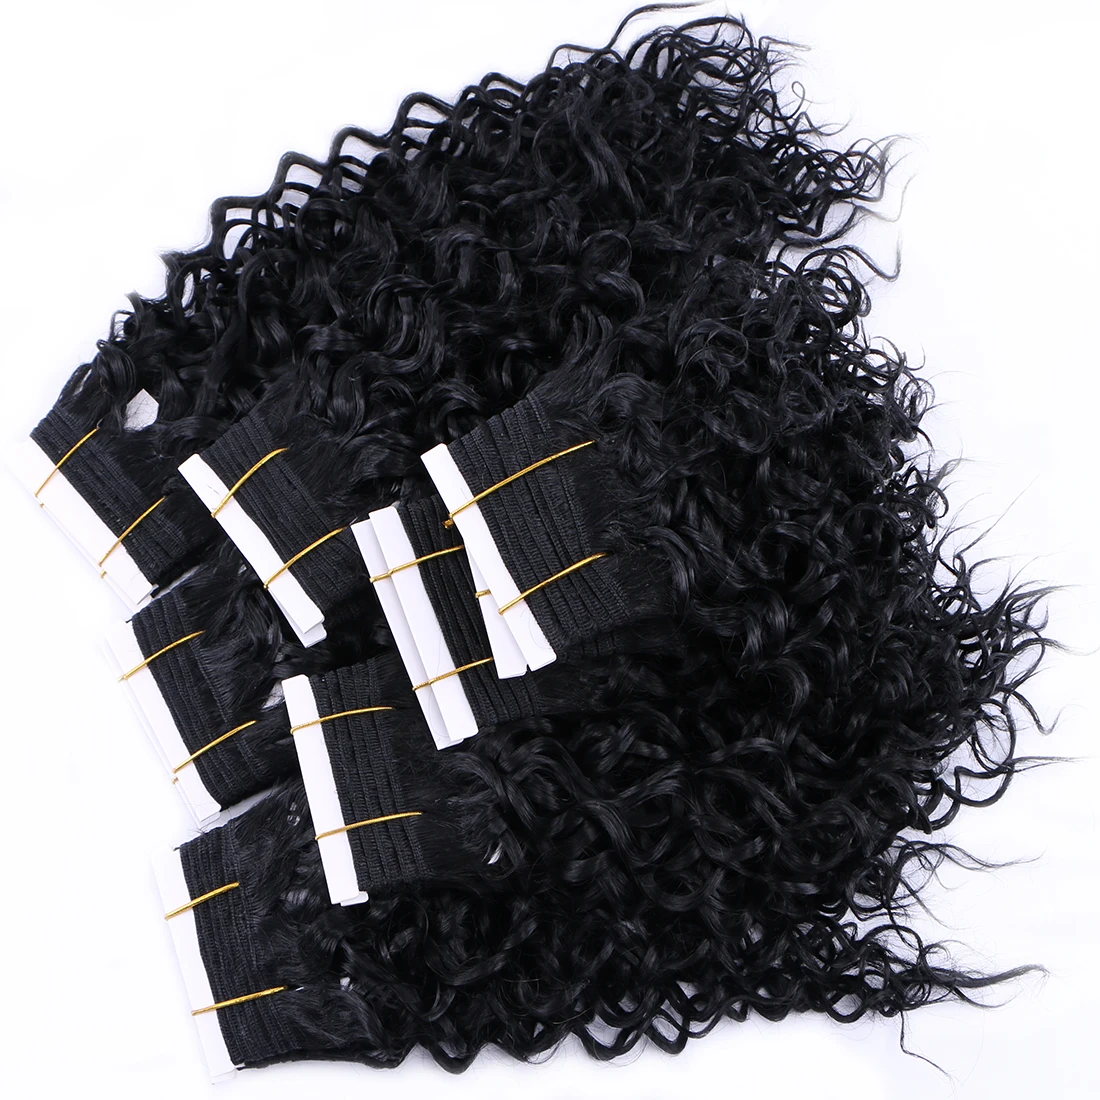 100 г 1 комплект вьющиеся переплетения синтетические волосы 8-20 дюймов Черная вода пучки волнистых волос Tissage волос продукт